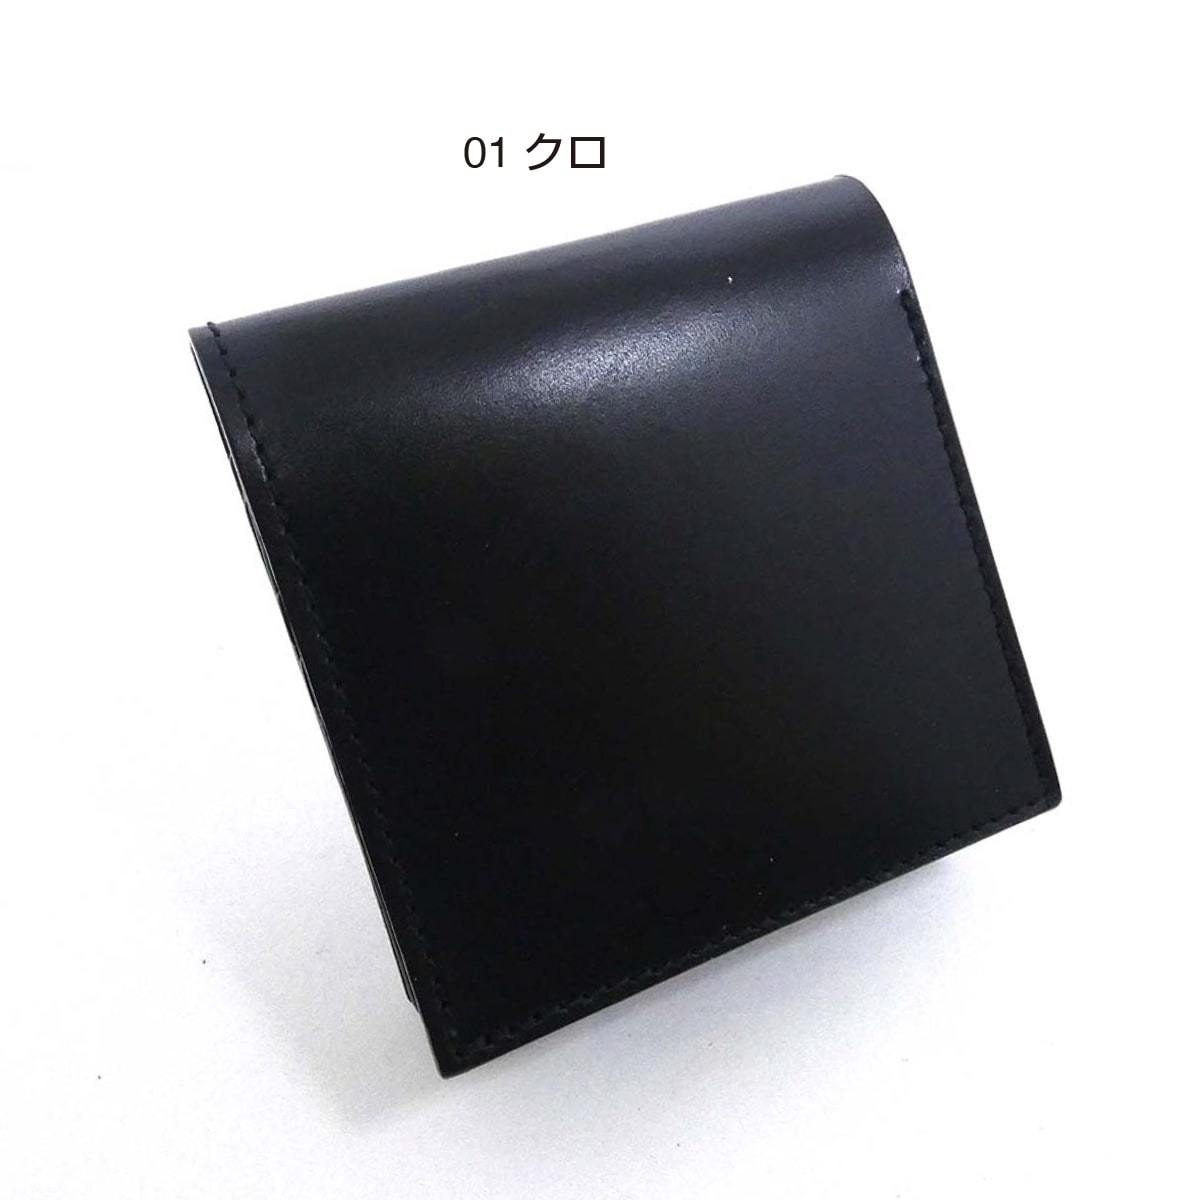 BOXコインケース 二つ折り財布 サドルレザー メンズ レディース ショート コンパクト 小さい ミニ 革 レザー 財布 ウォレット クロ ヌメ革